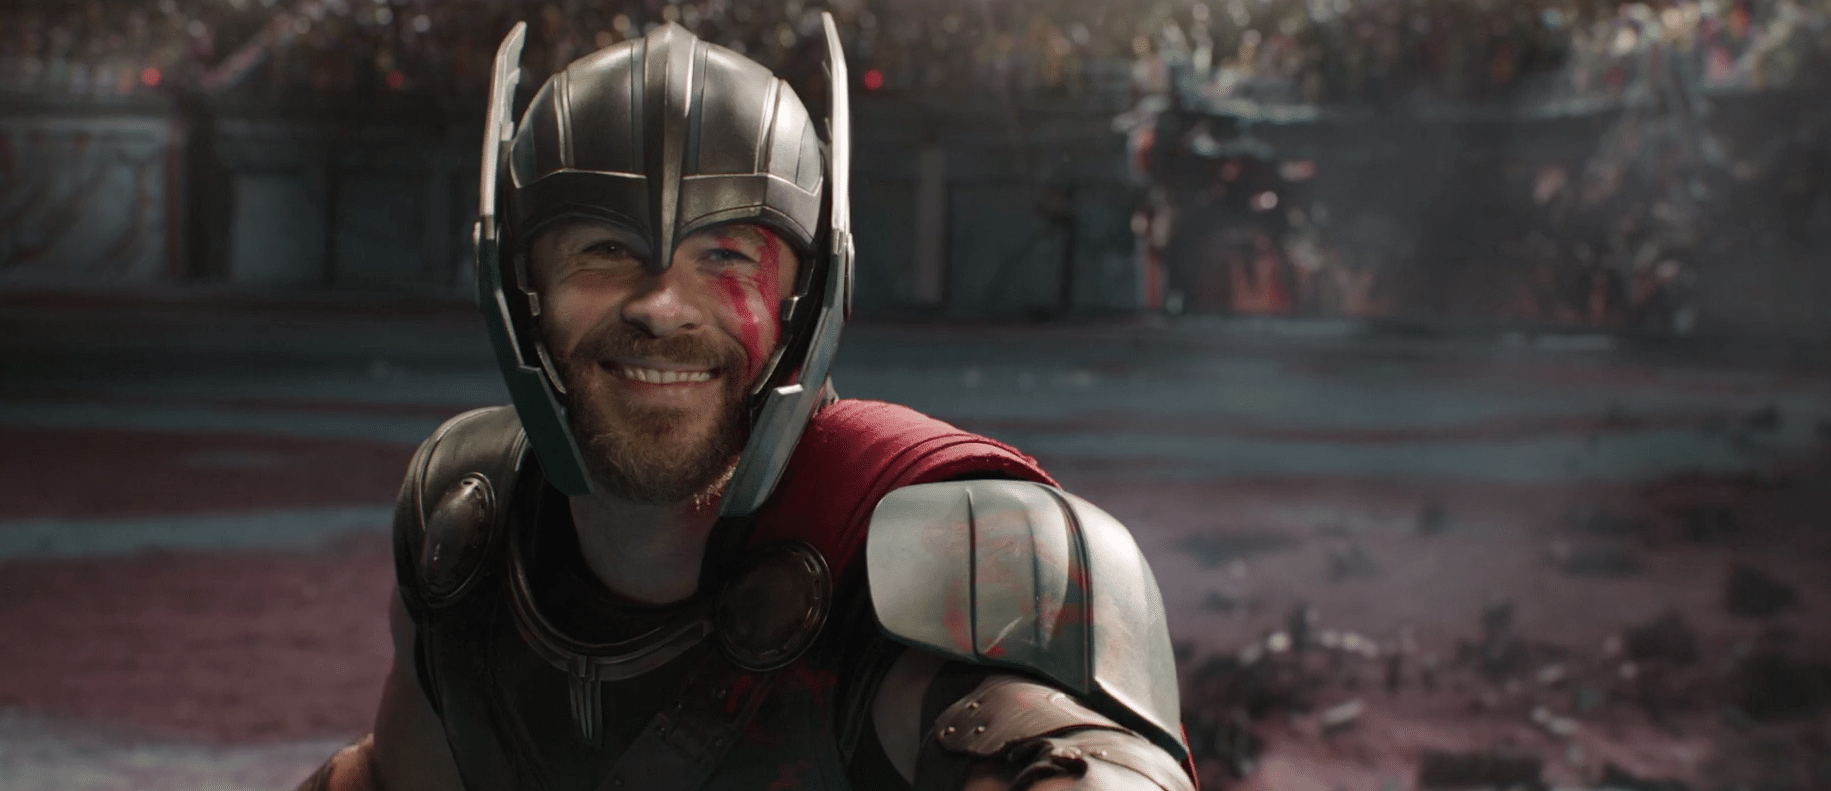 Seu dia vai ficar mais feliz com essas fotos do ator de Thor